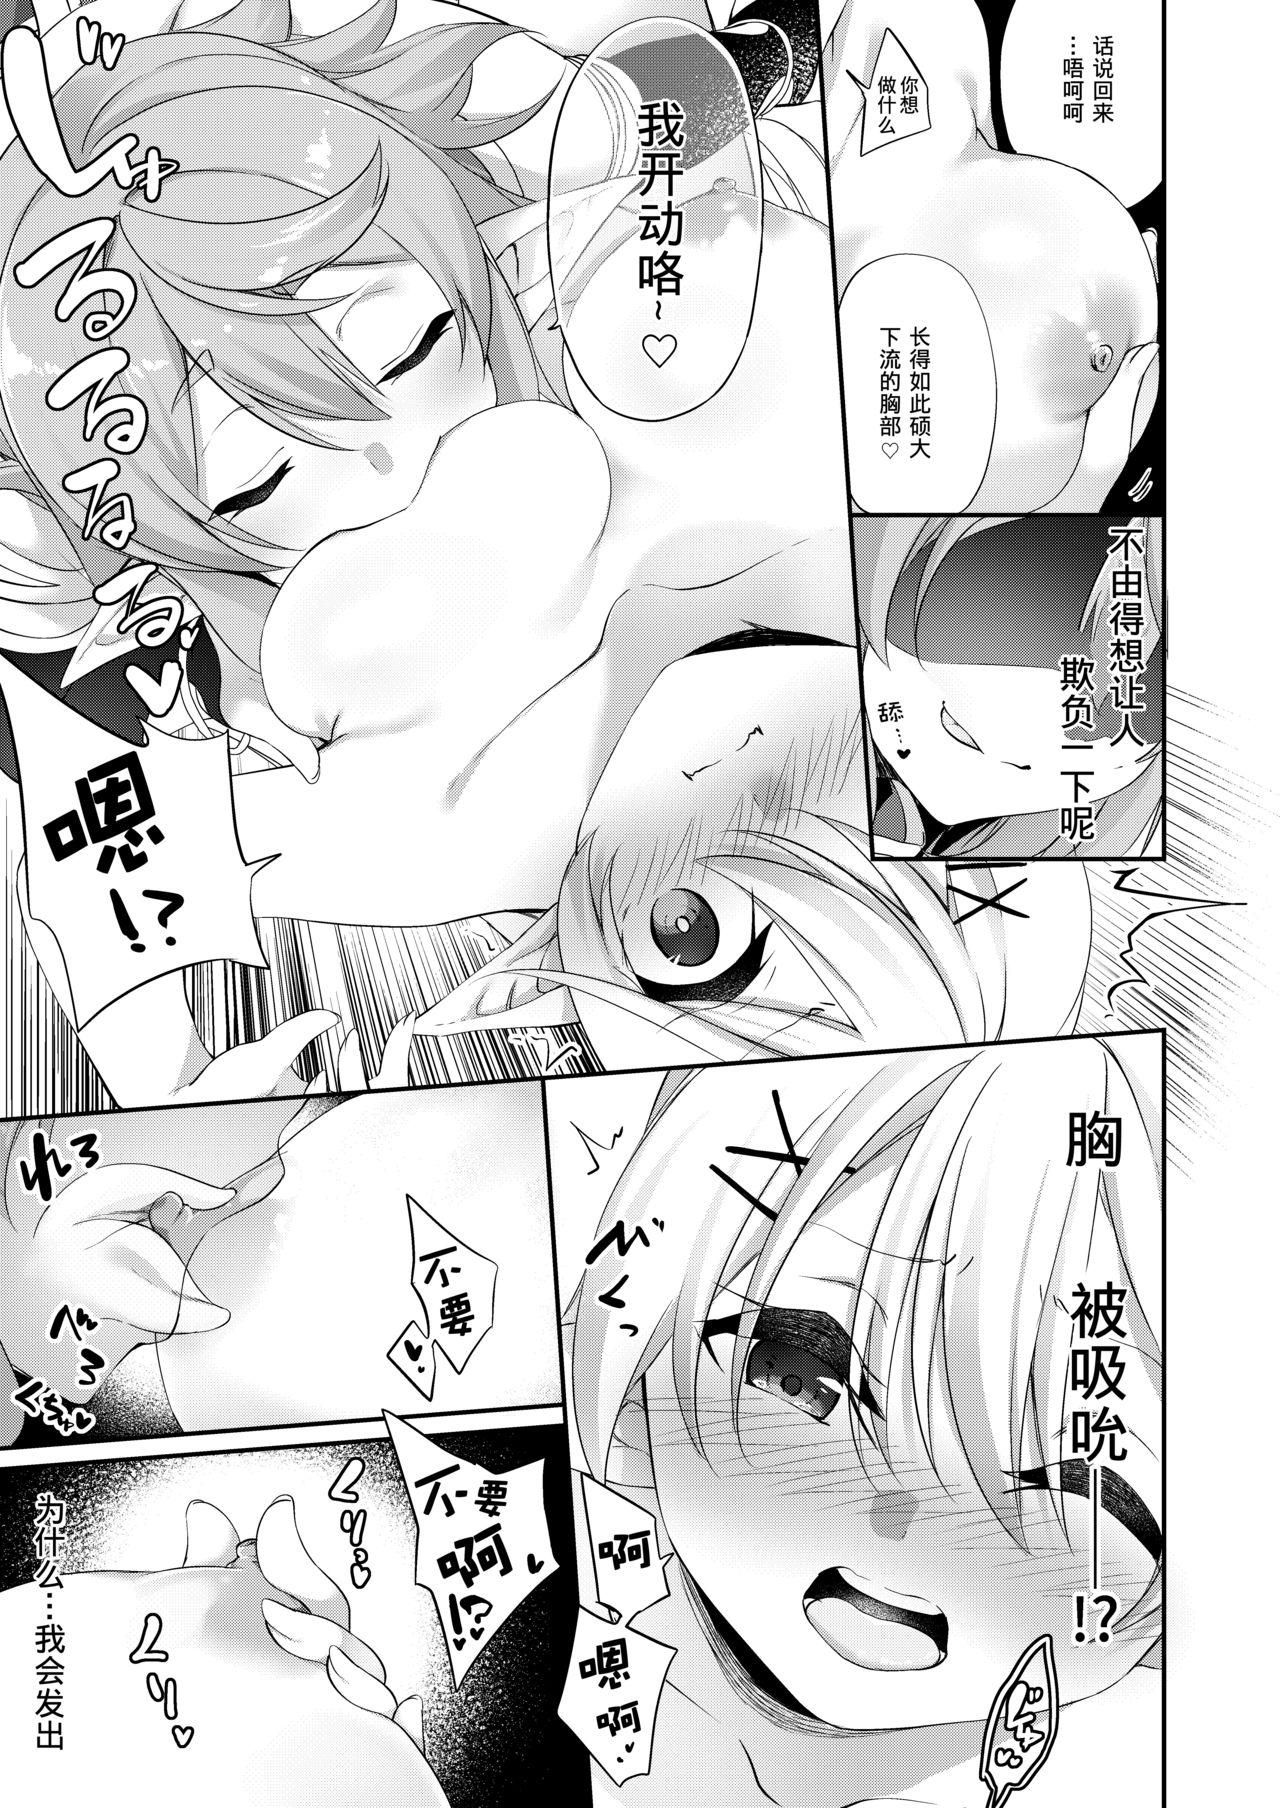 3some Batsu to Shite Ochite Yuku - Original Hot Wife - Page 12